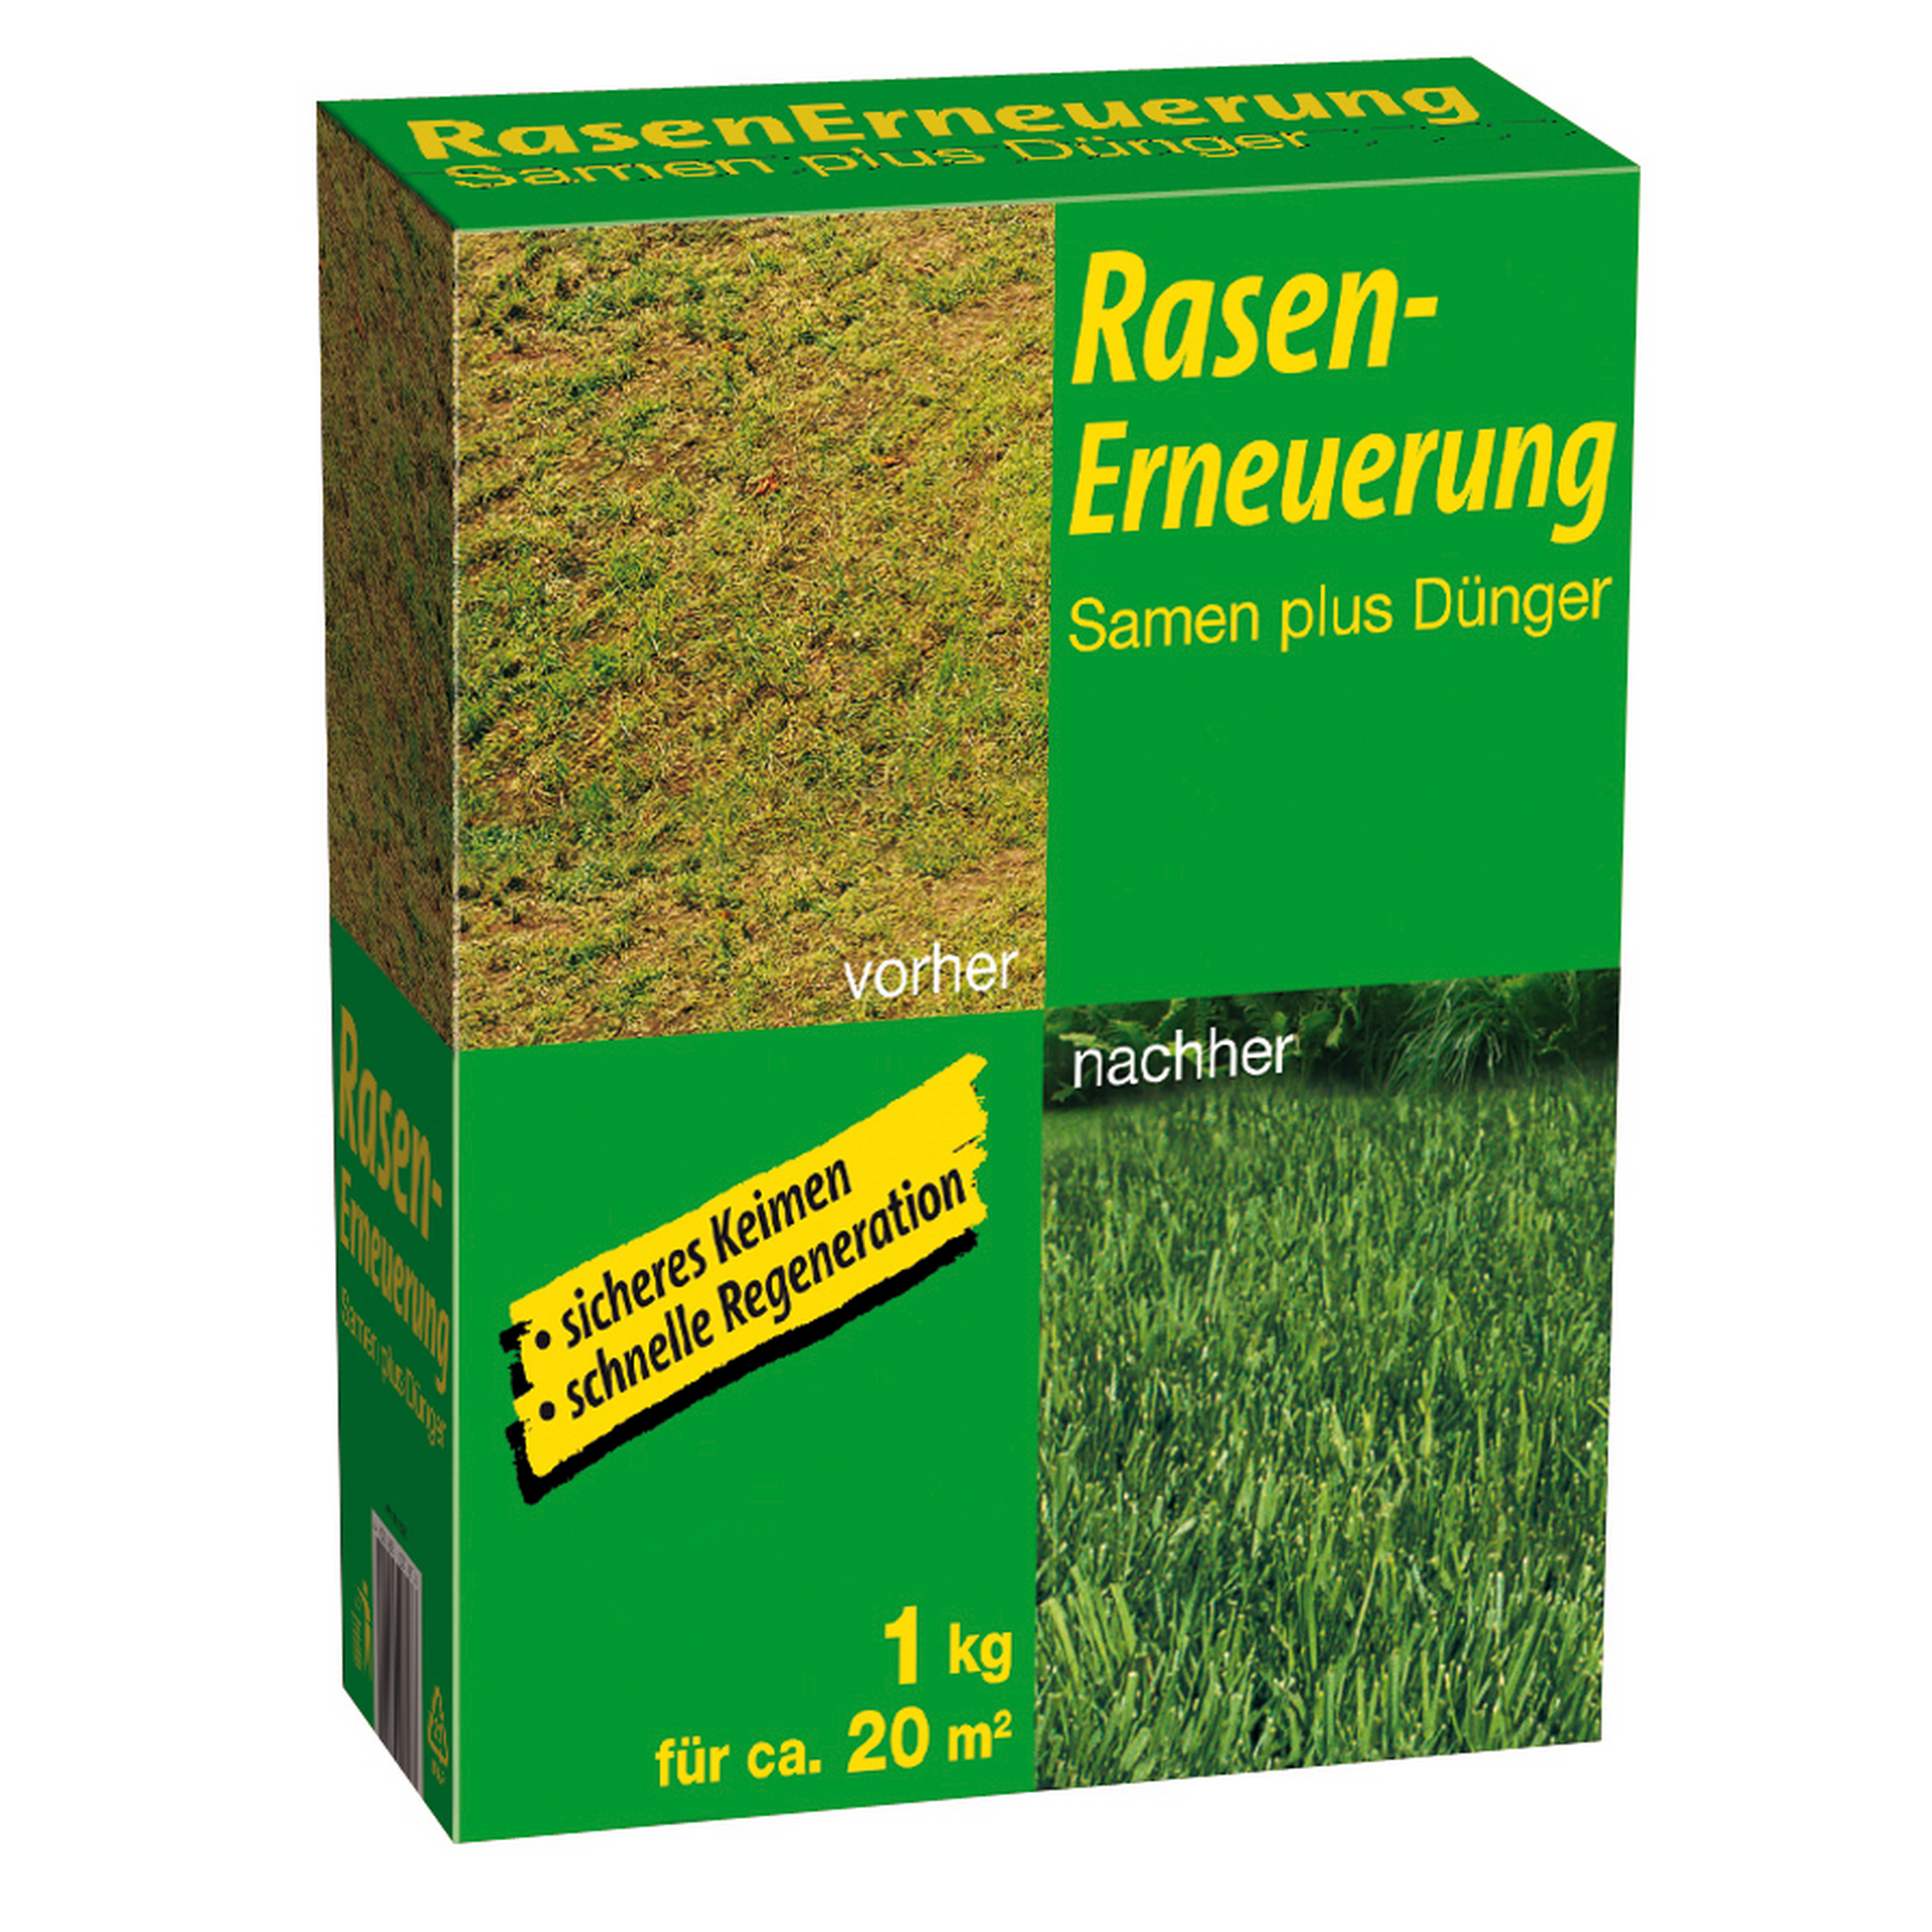 Rasensamen und Dünger 'Rasenerneuerung' 1 kg + product picture